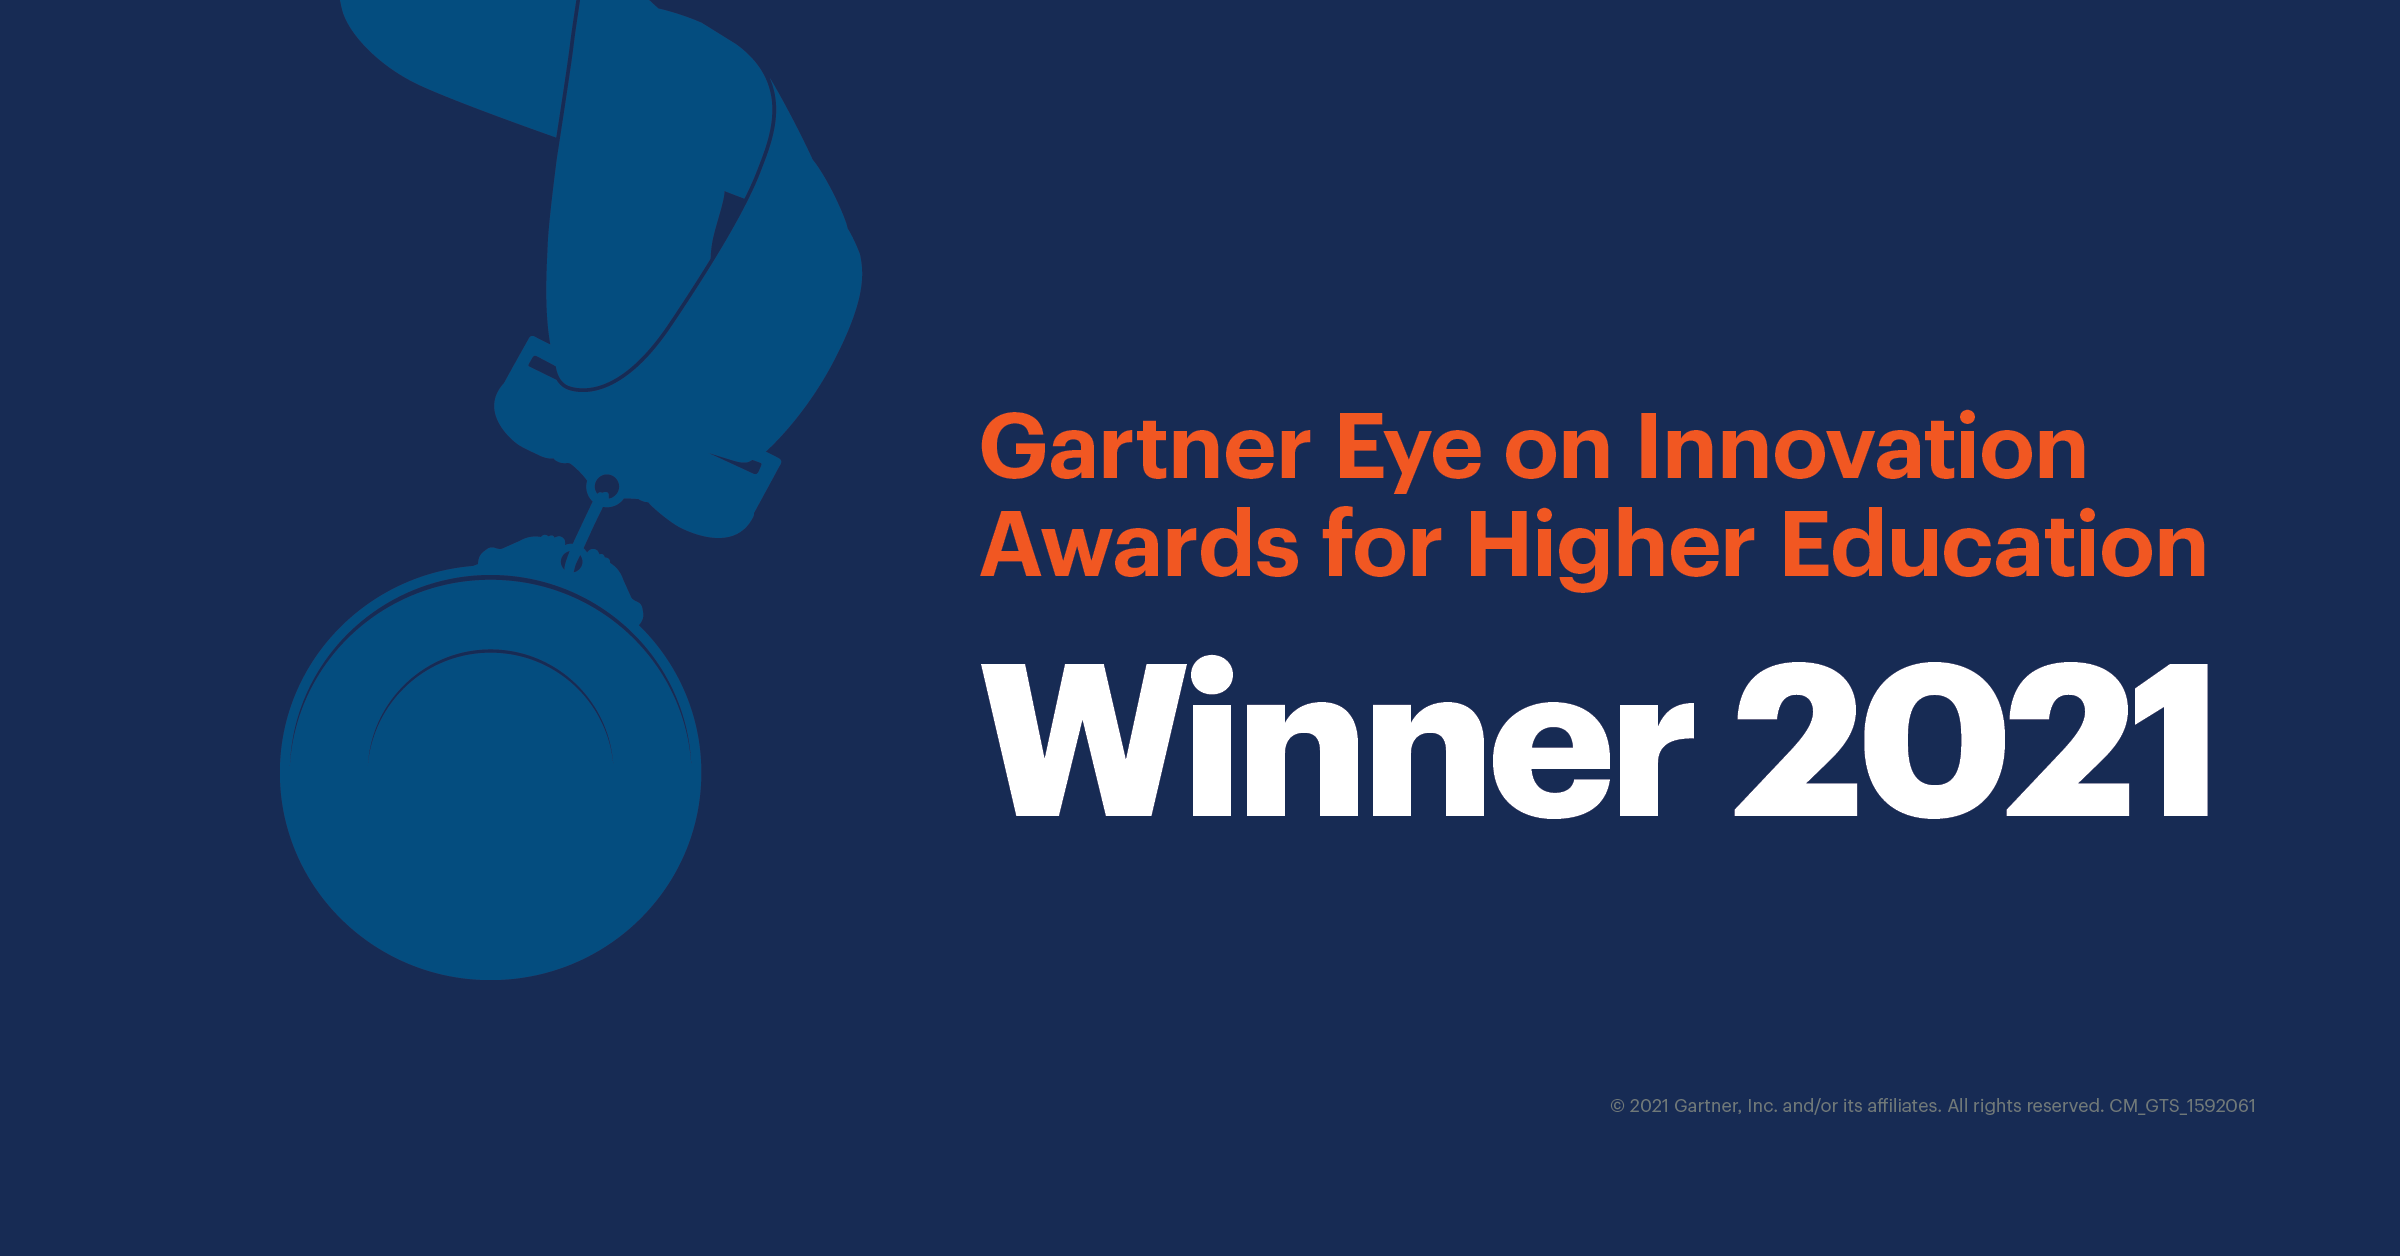 SAVY is the 2021 Gartner Eye on Innovation Award winner.